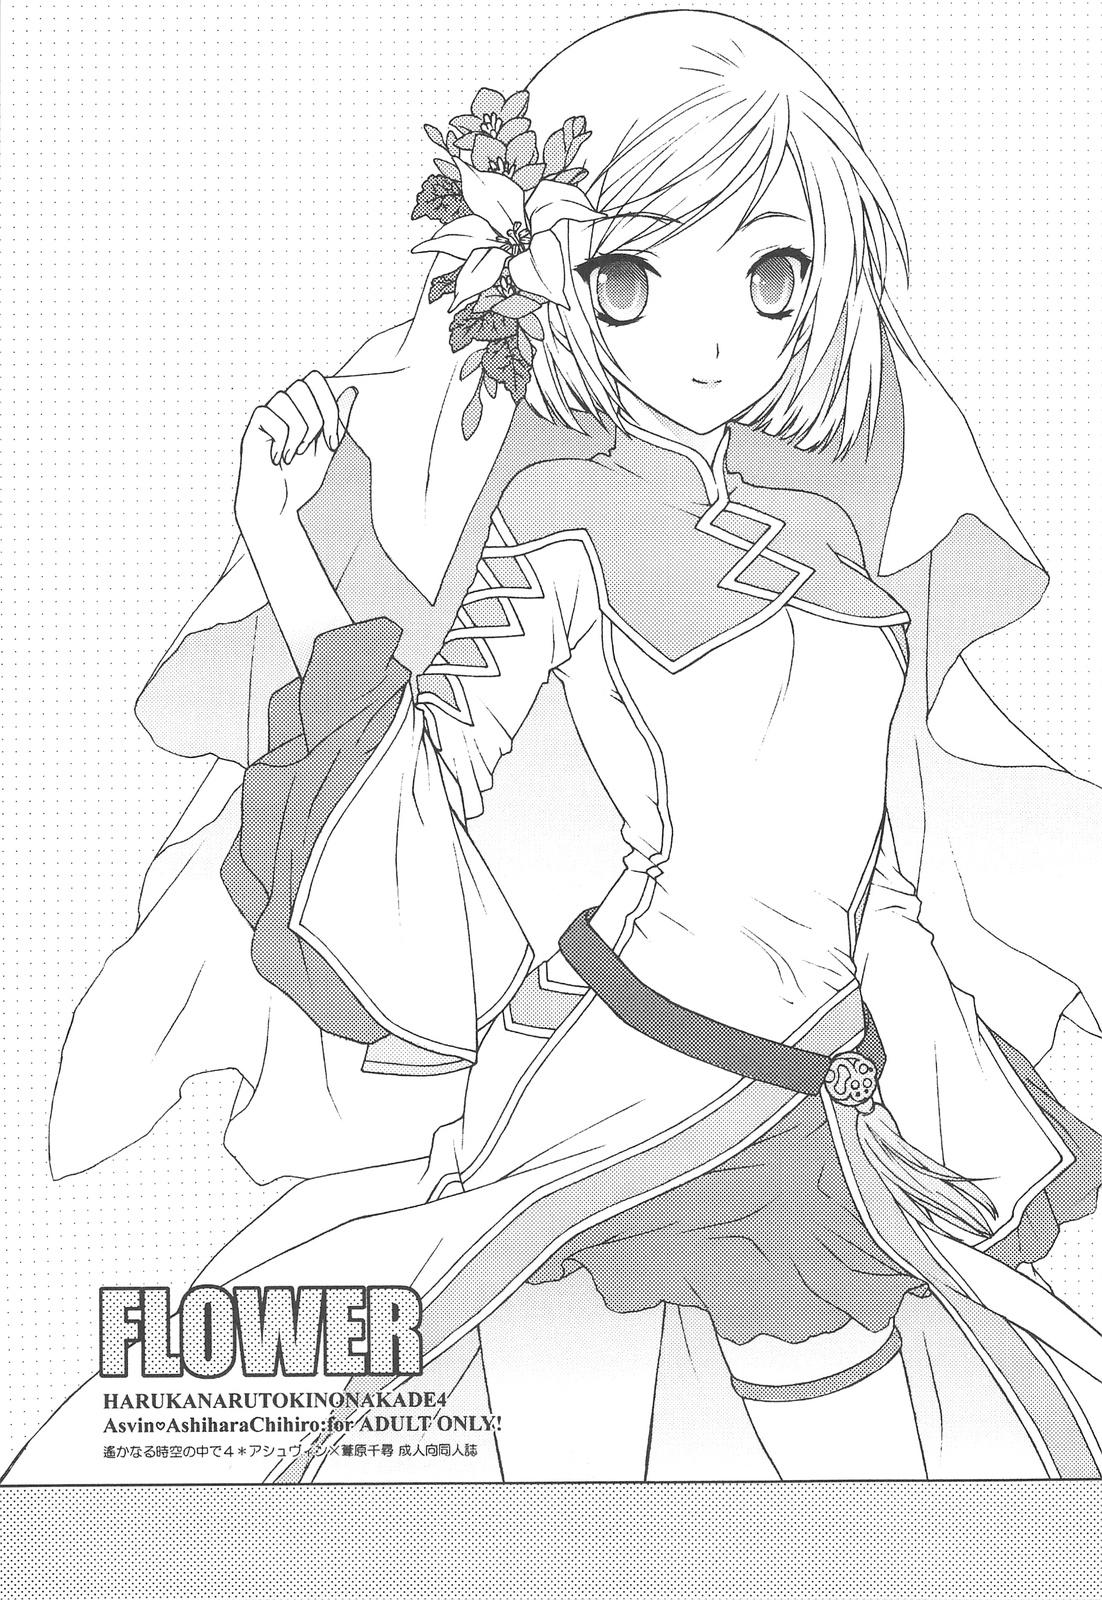 FLOWER 1